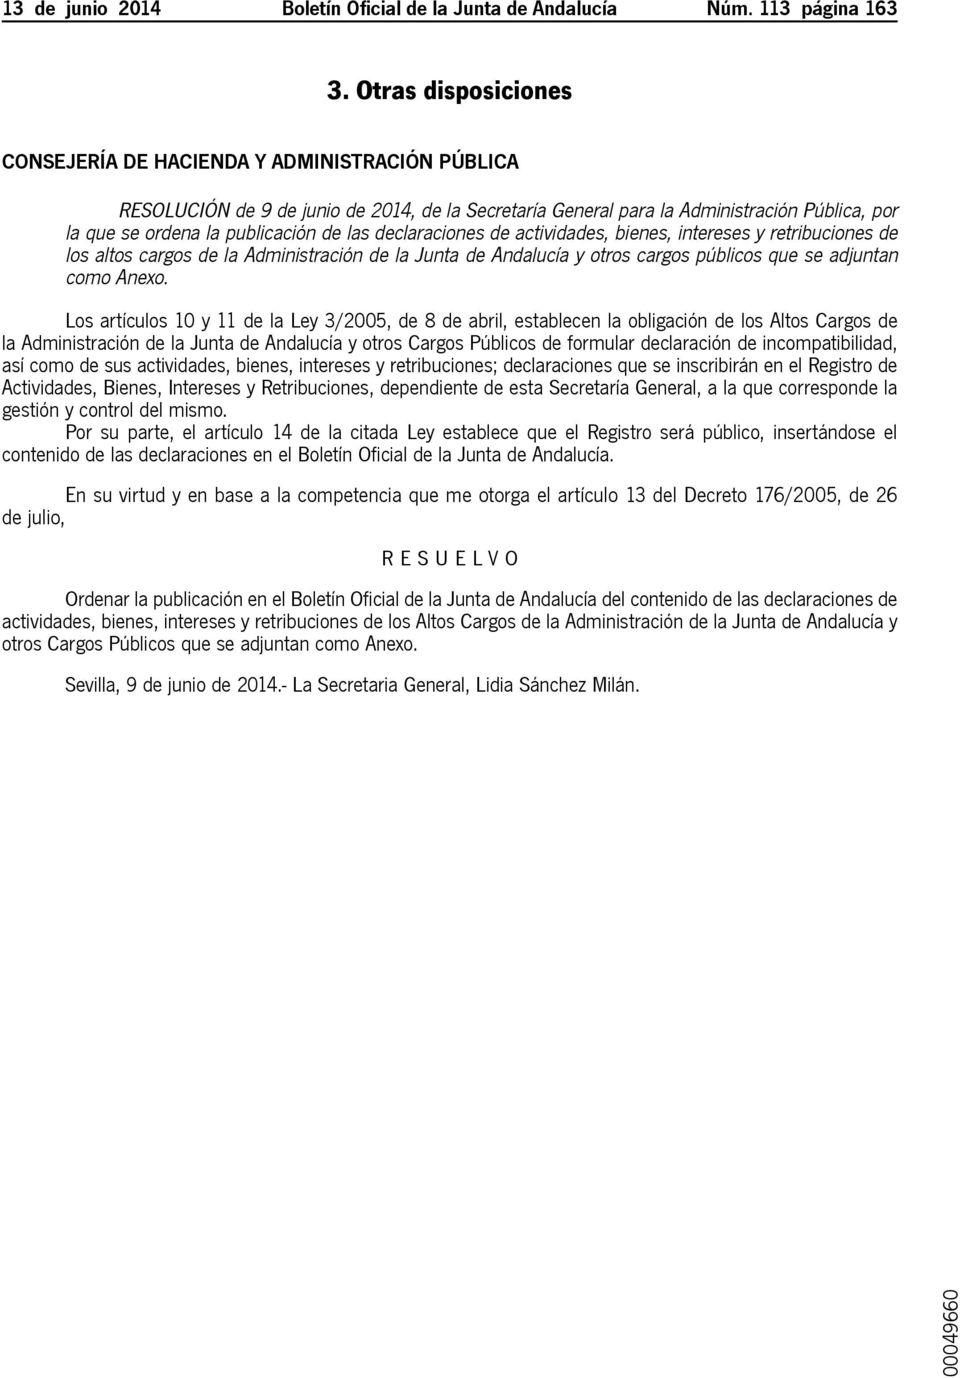 las declaraciones de actividades, bienes, intereses y retribuciones de los altos cargos de la Administración de la Junta de Andalucía y otros cargos públicos que se adjuntan como Anexo.